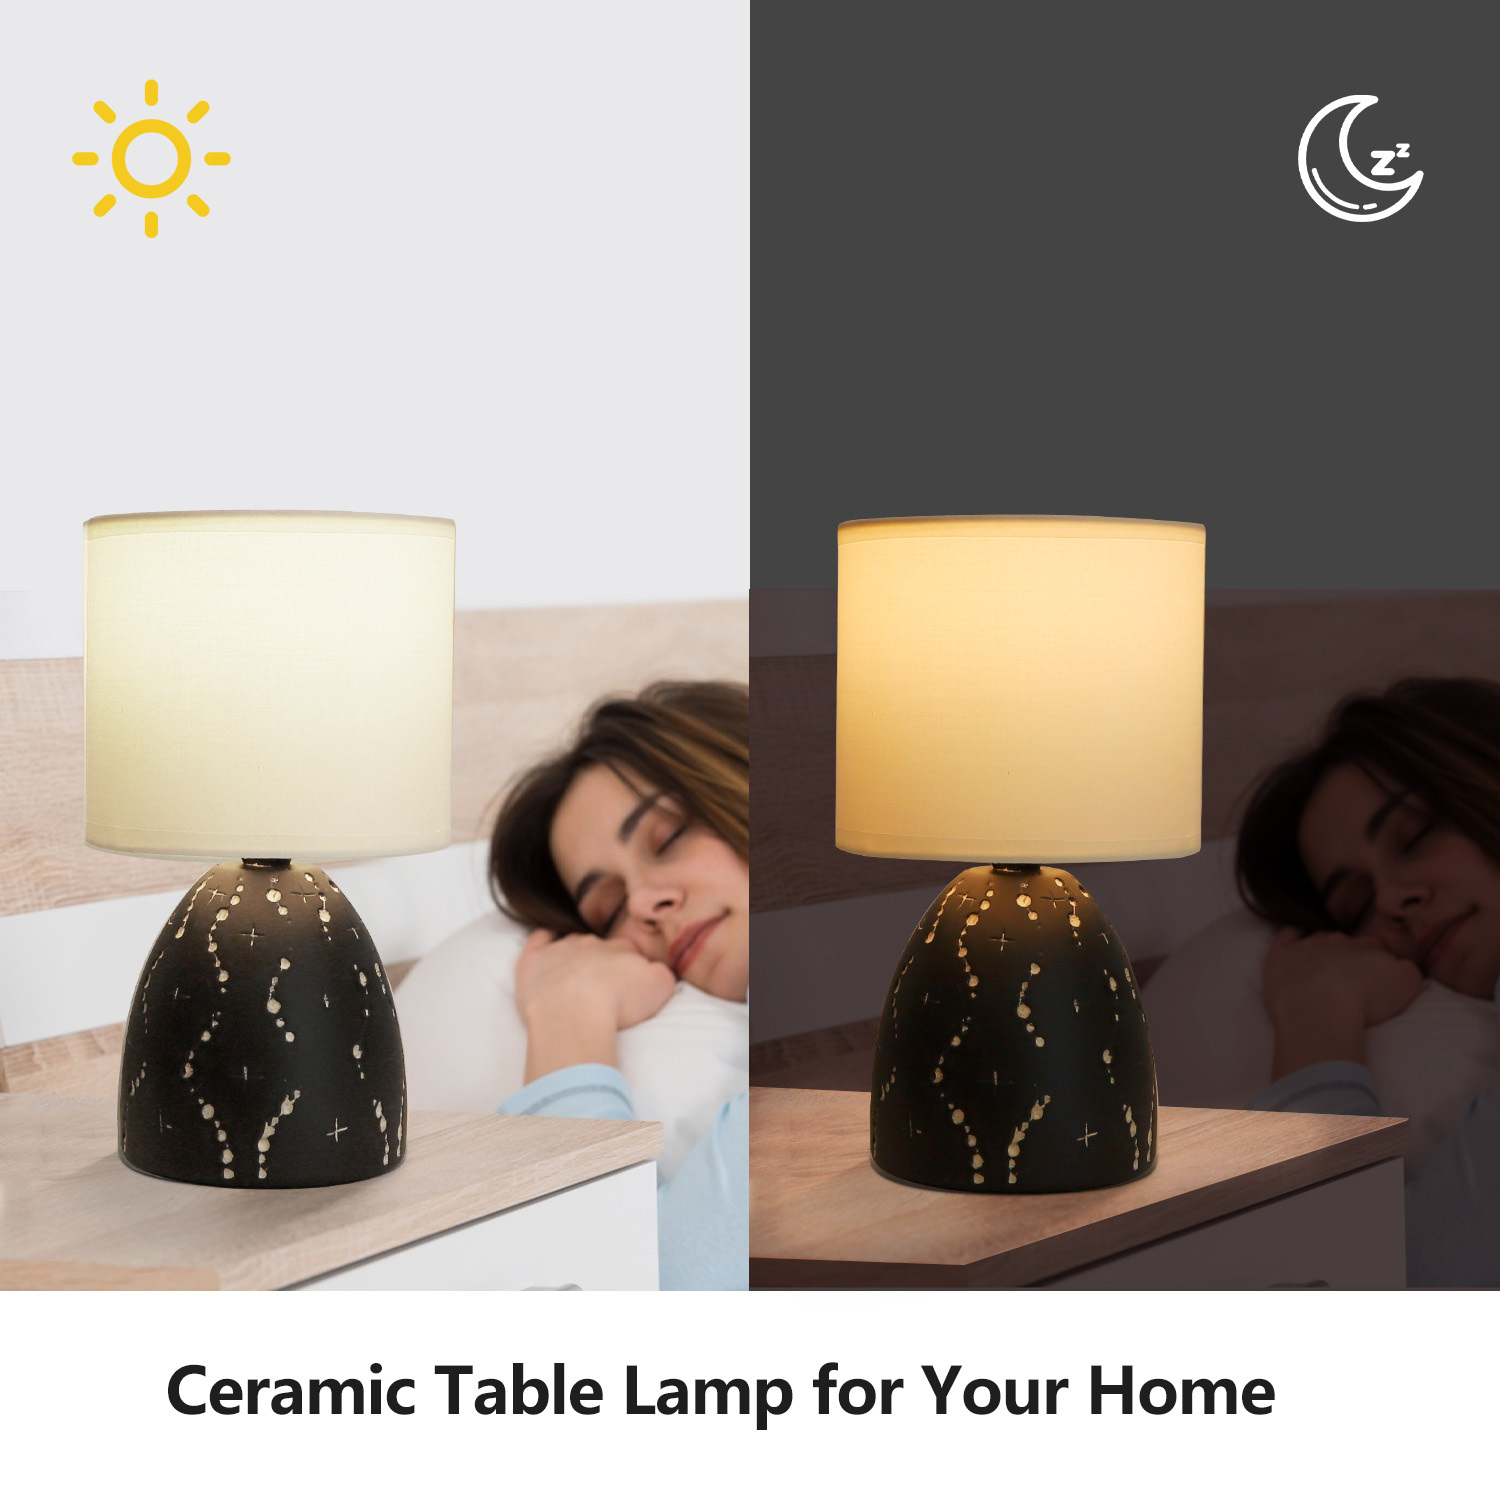 Aigostar lampada da tavolo E14 in ceramica con paralume in stoffa. Design vintage.